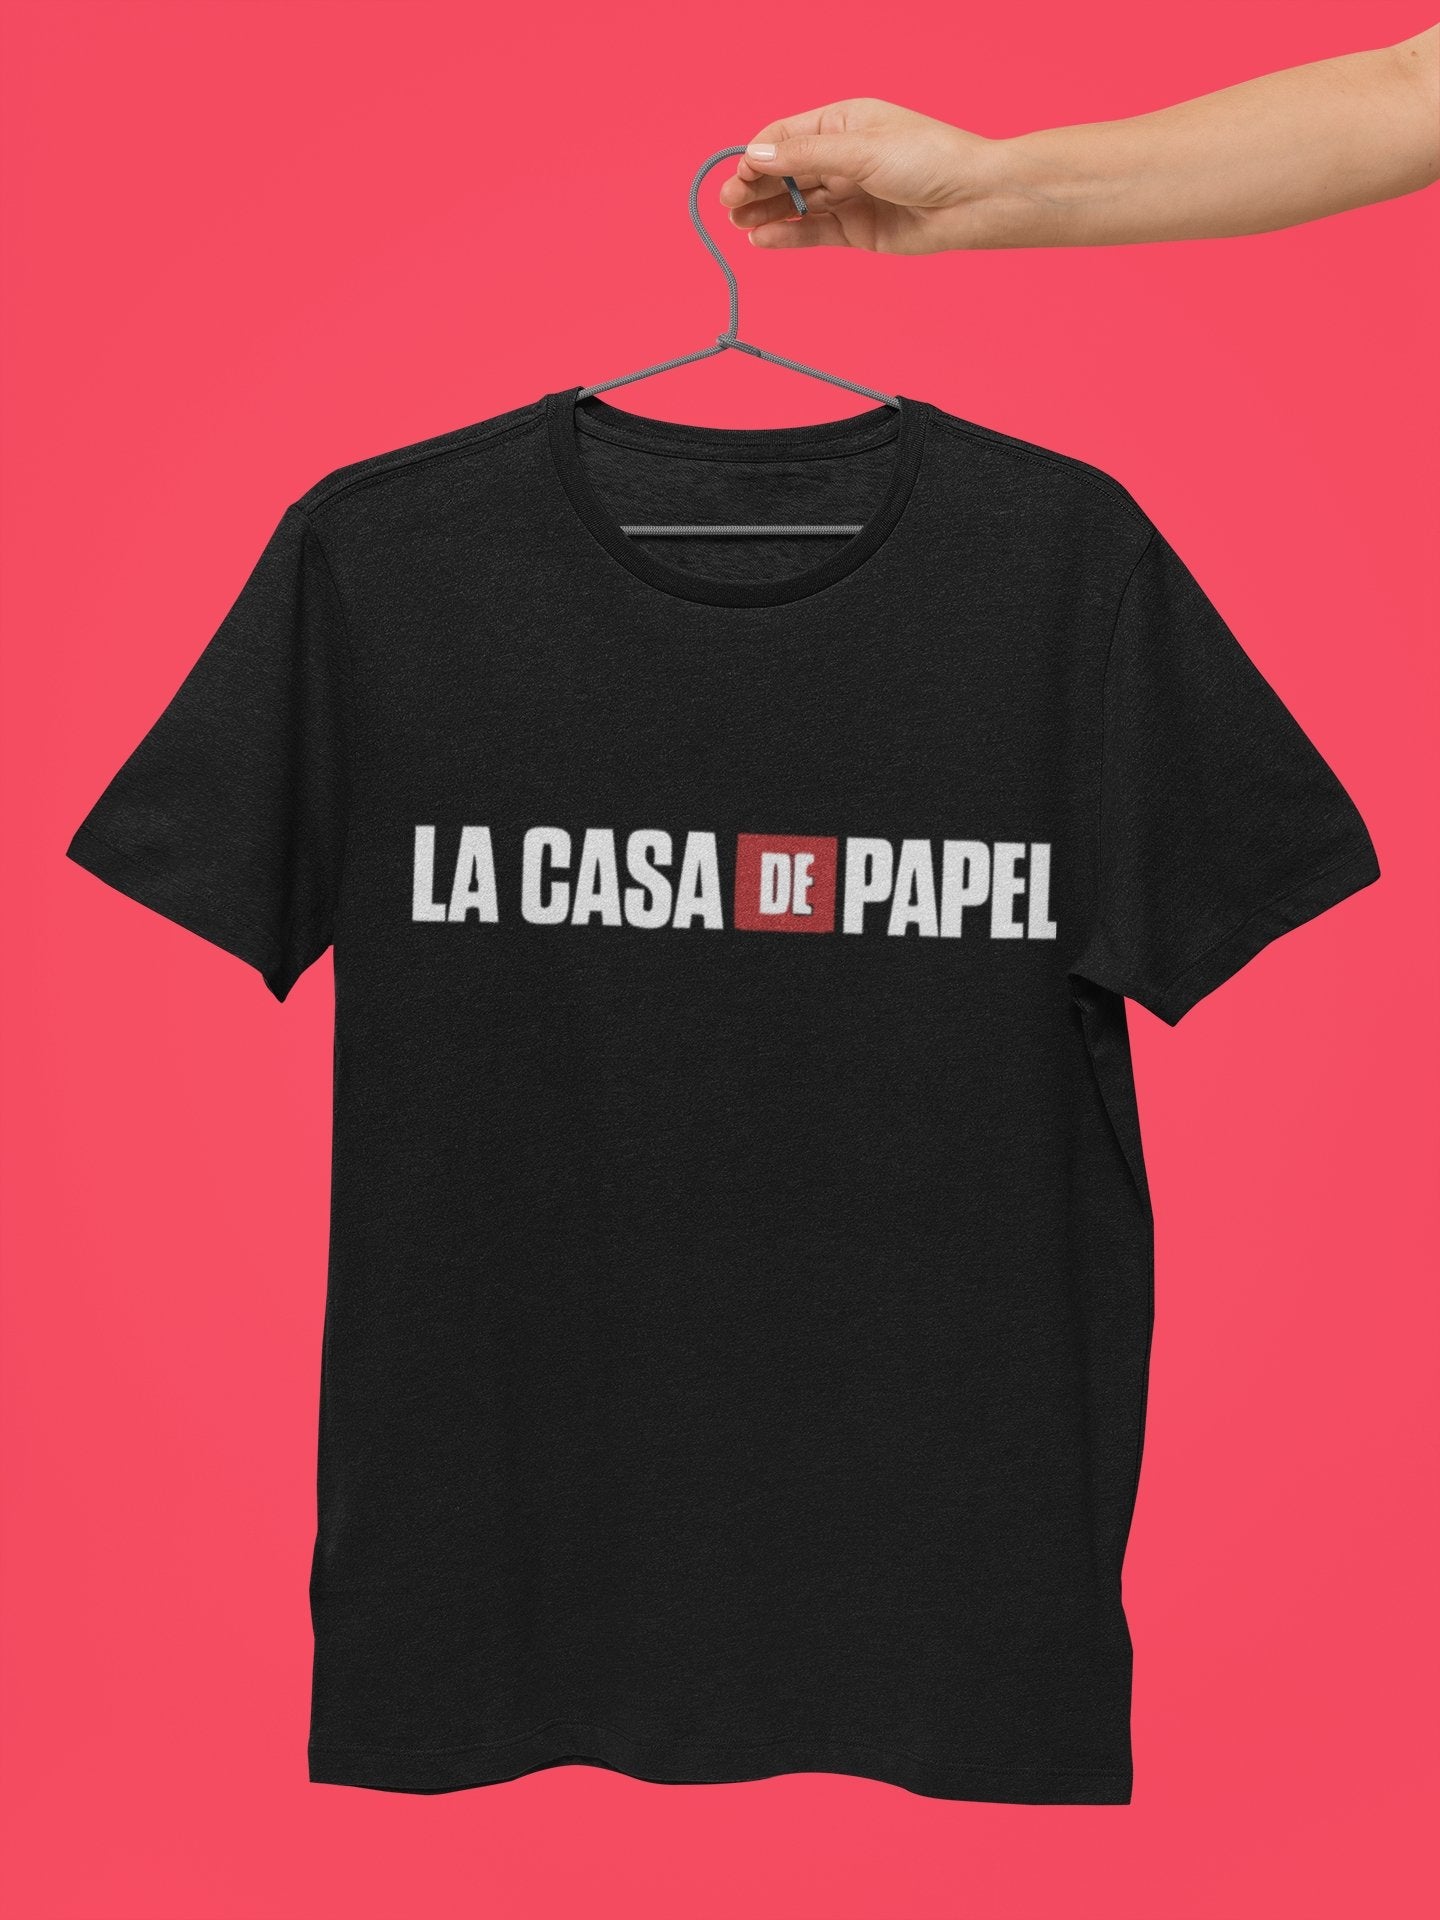 La Casa De Papel Graphic T shirt for Men - Insane Tees